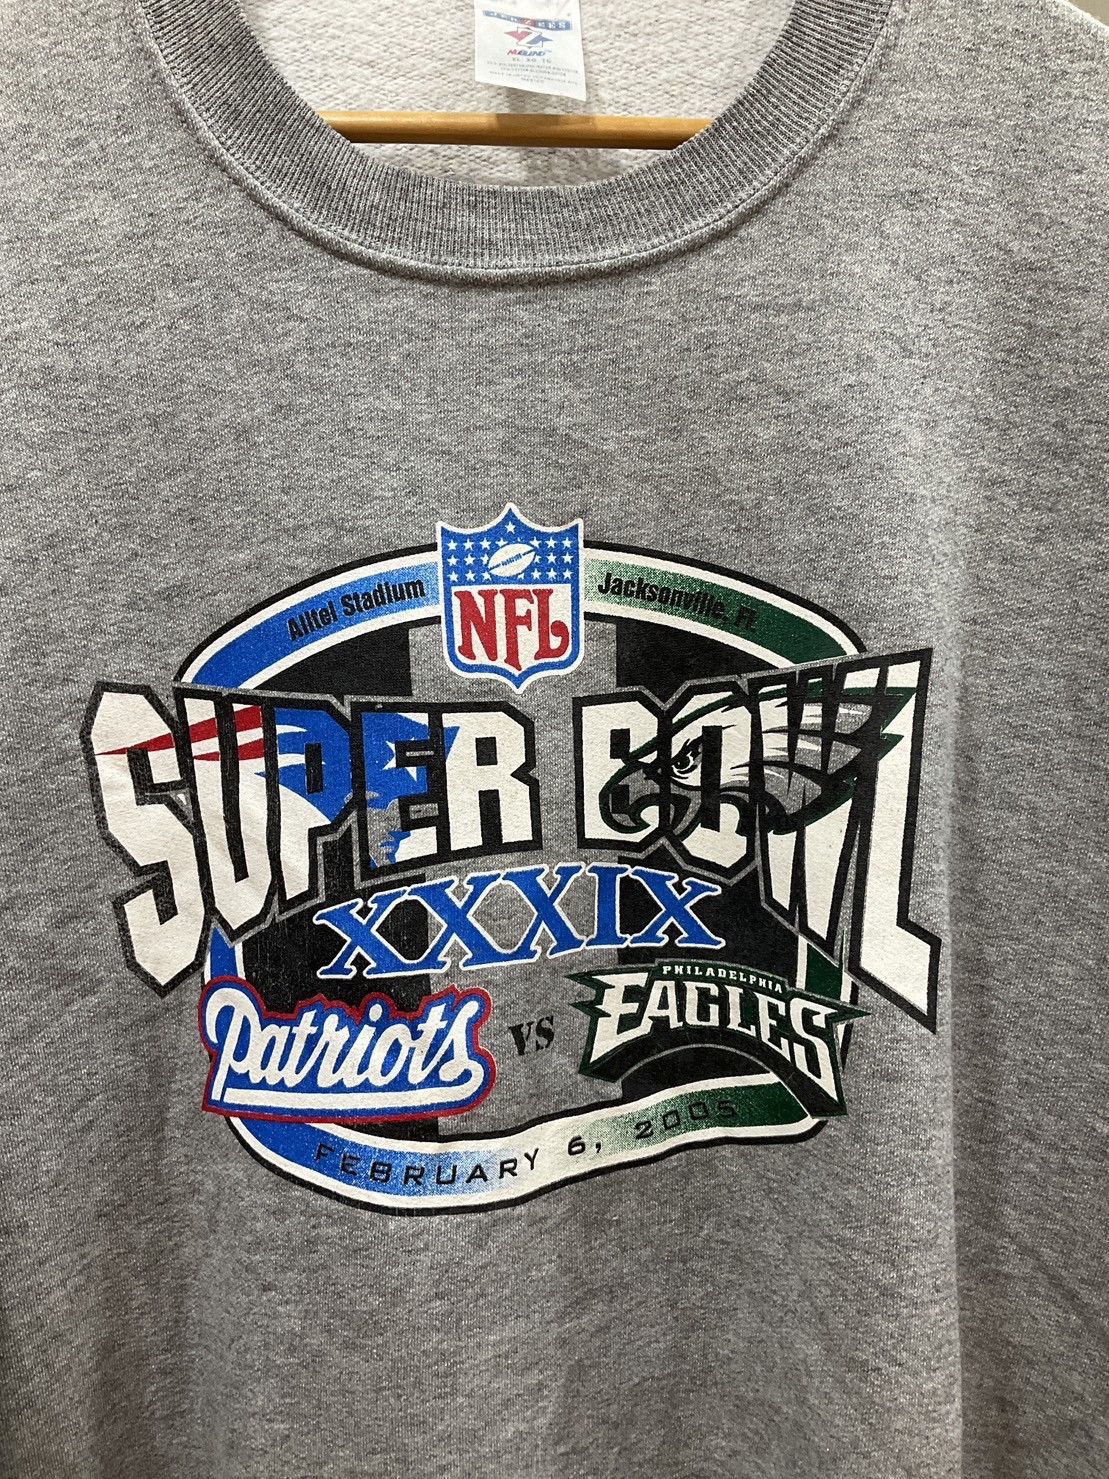 Vintage Vintage NFL Super Bowl xxxix Sweatshirt Size US XL / EU 56 / 4 - 2 Preview